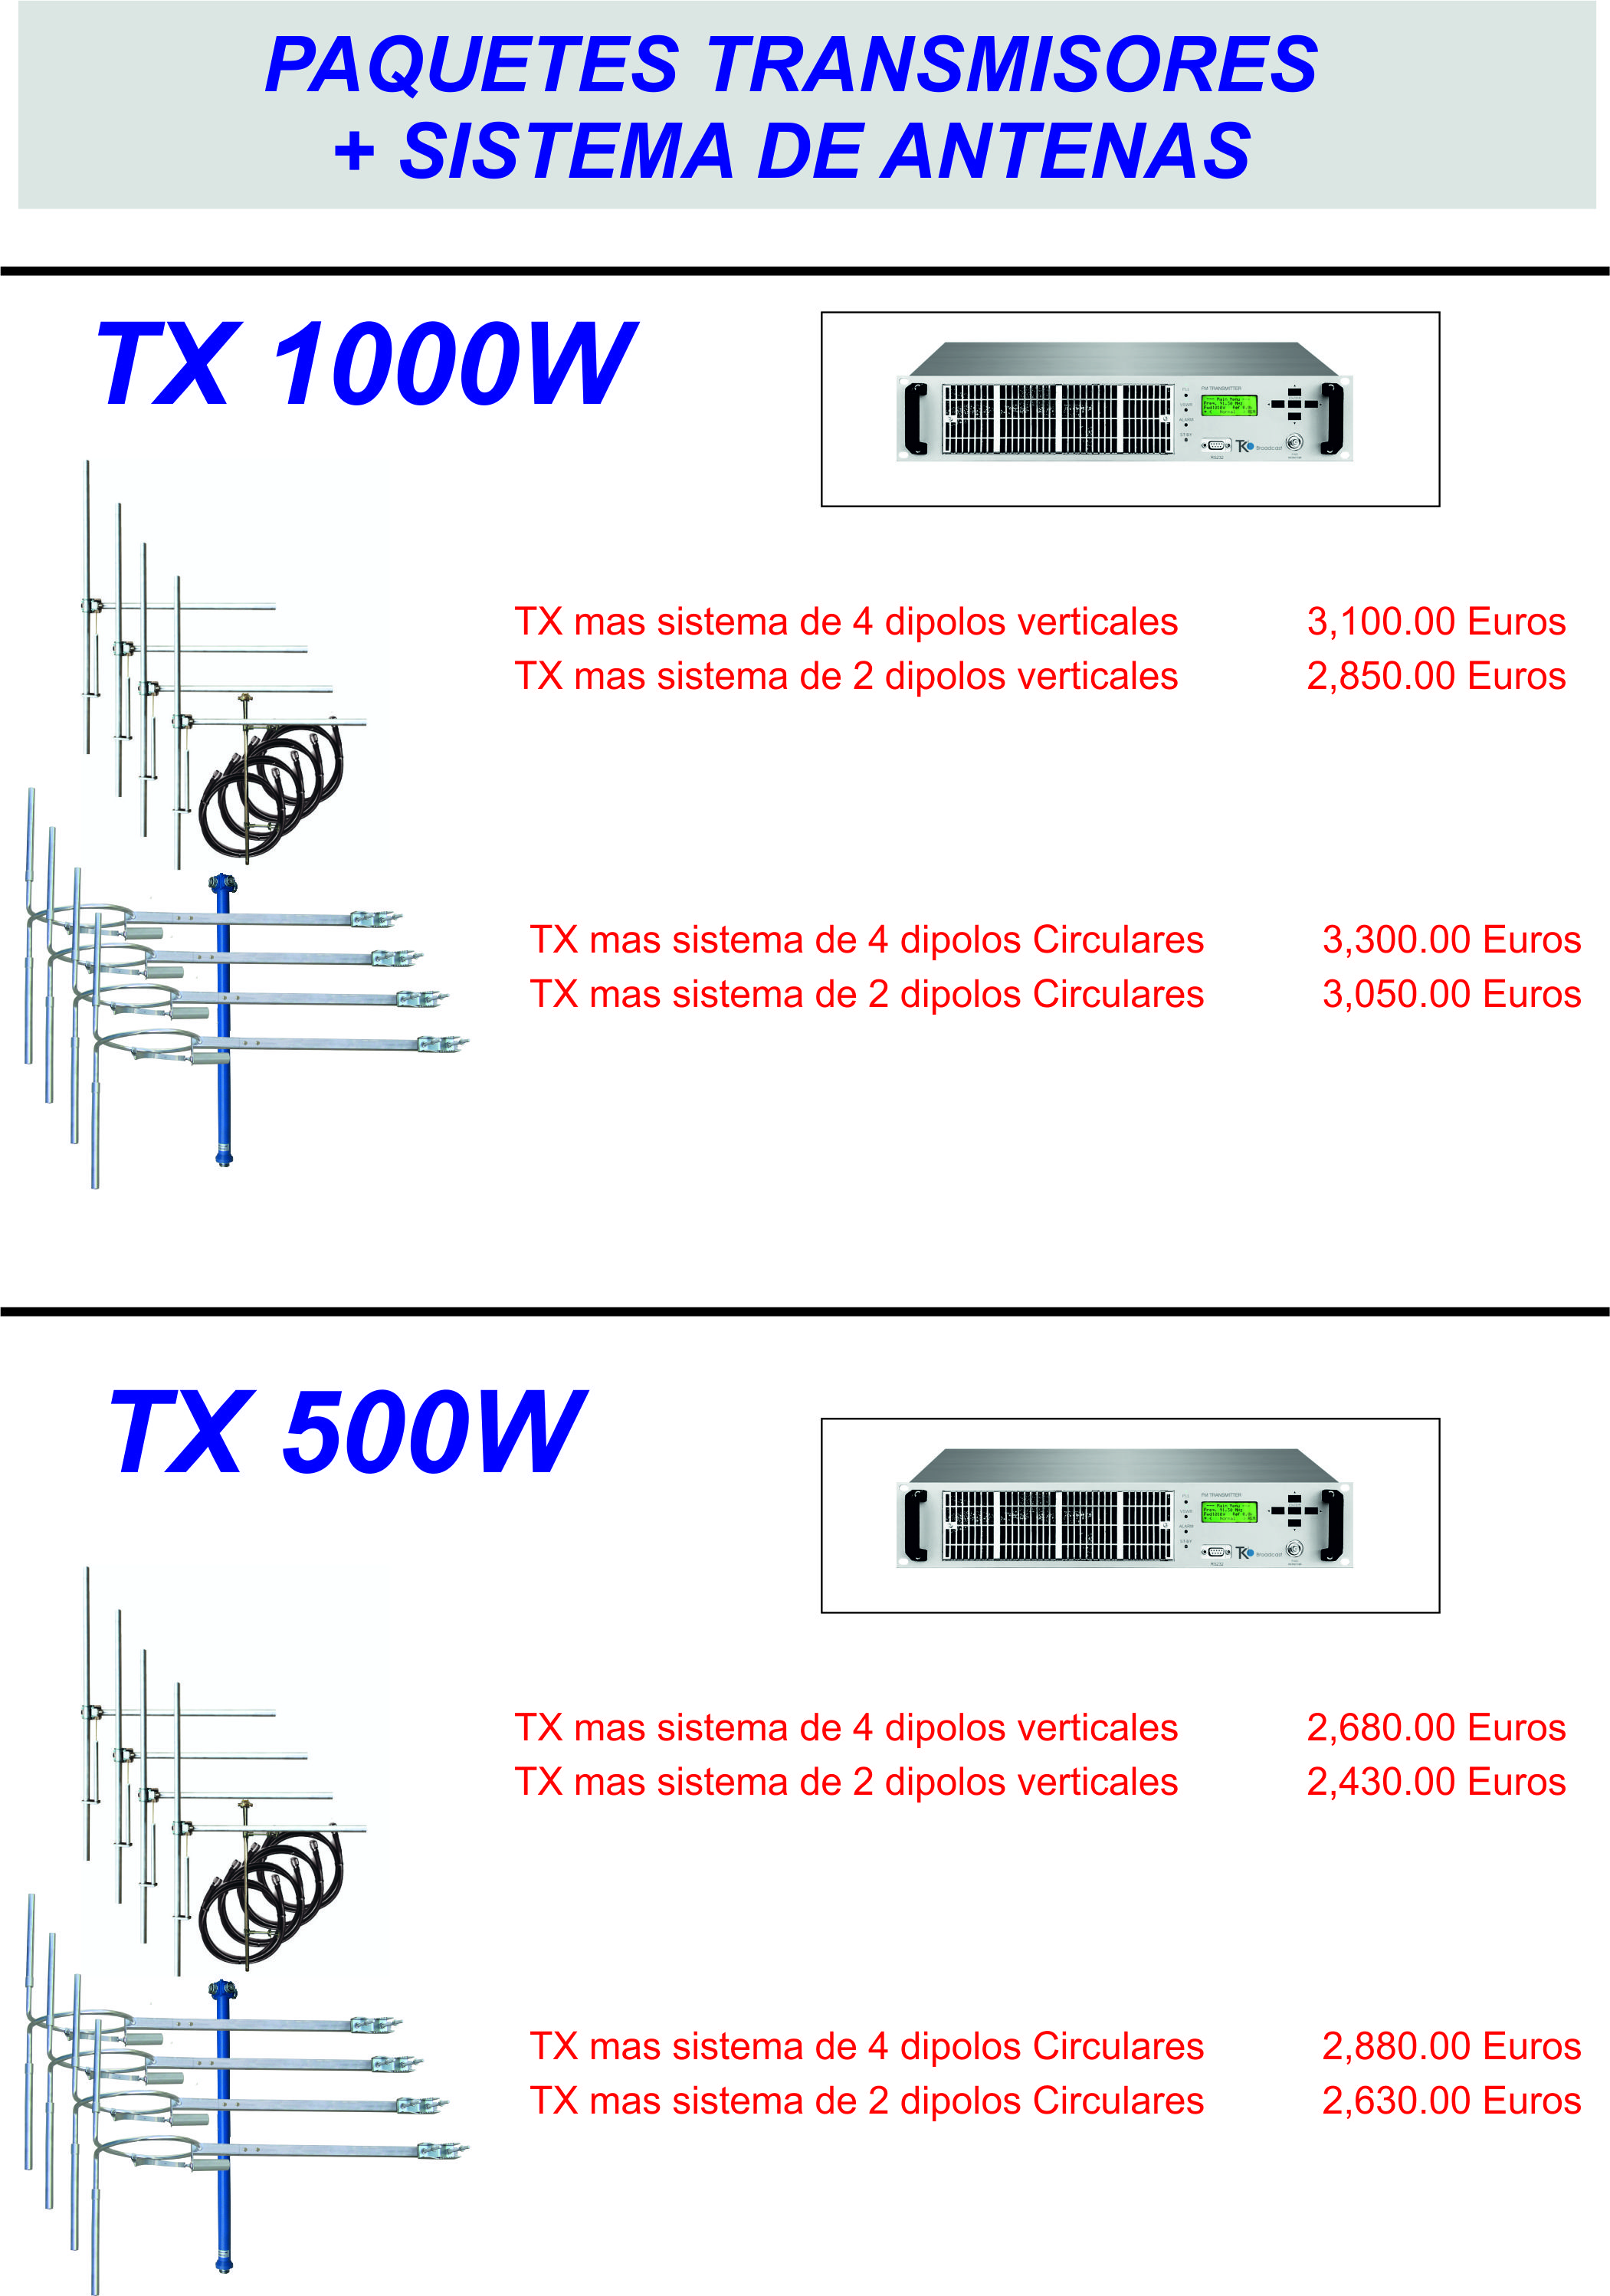 Oferta transmision+antenas